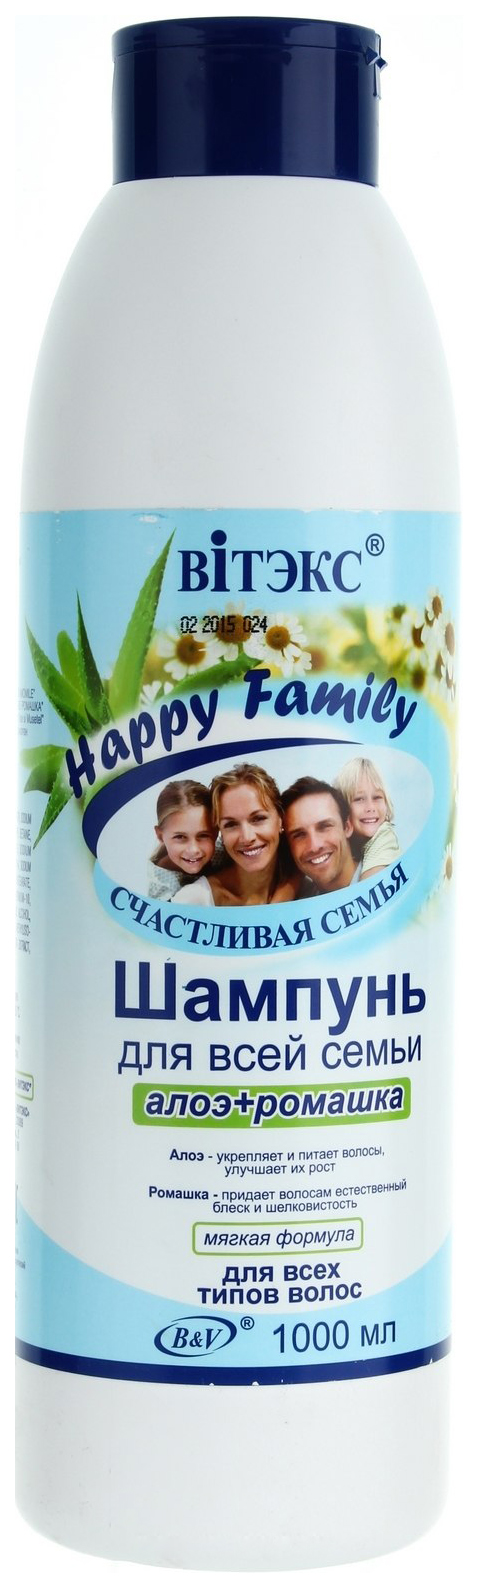 Шампунь Витэкс Happy Family 1 л витэкс крем мыло для рук алоэ ромашка happy family счастливая семья 500